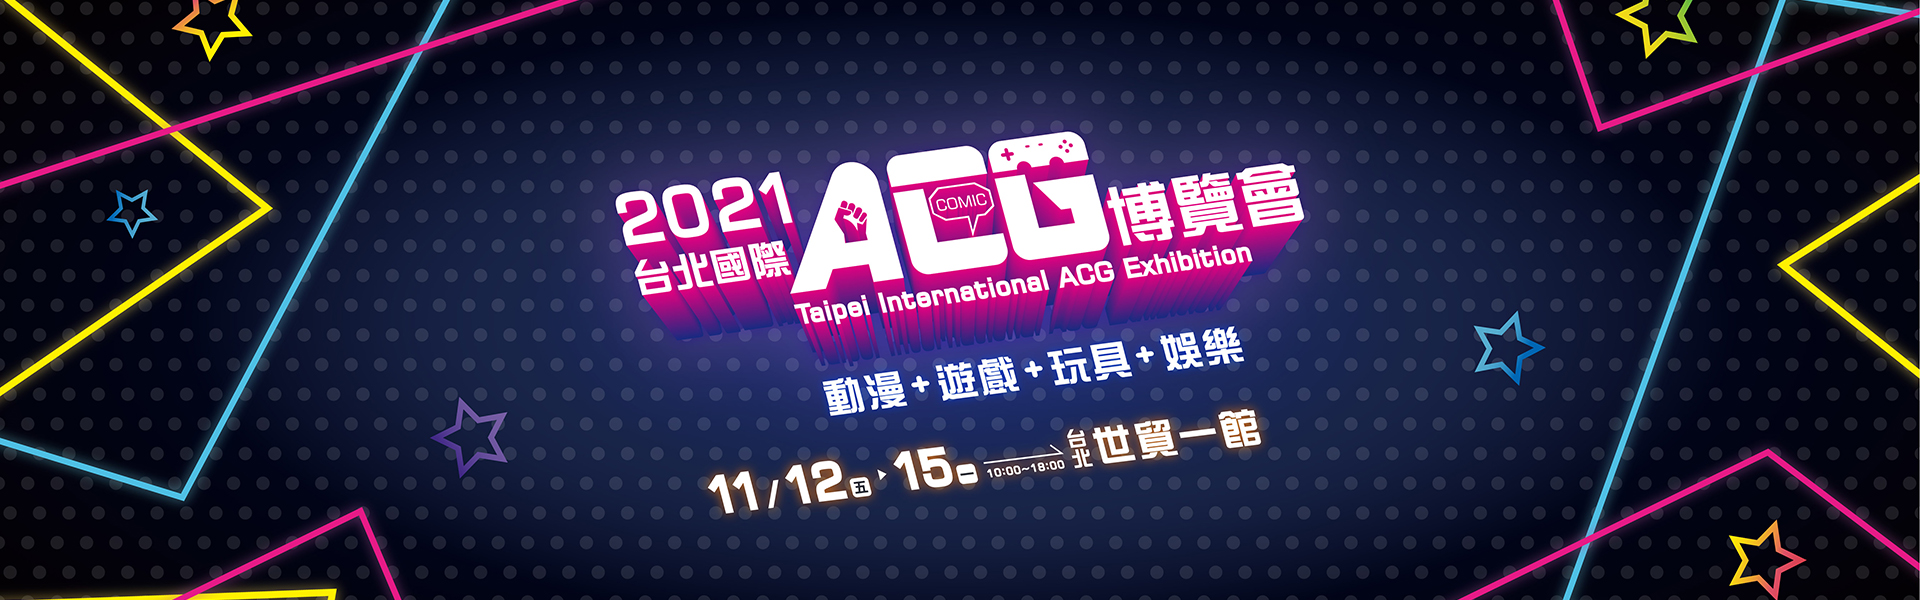 台北國際ACG博覽會-展覽資訊